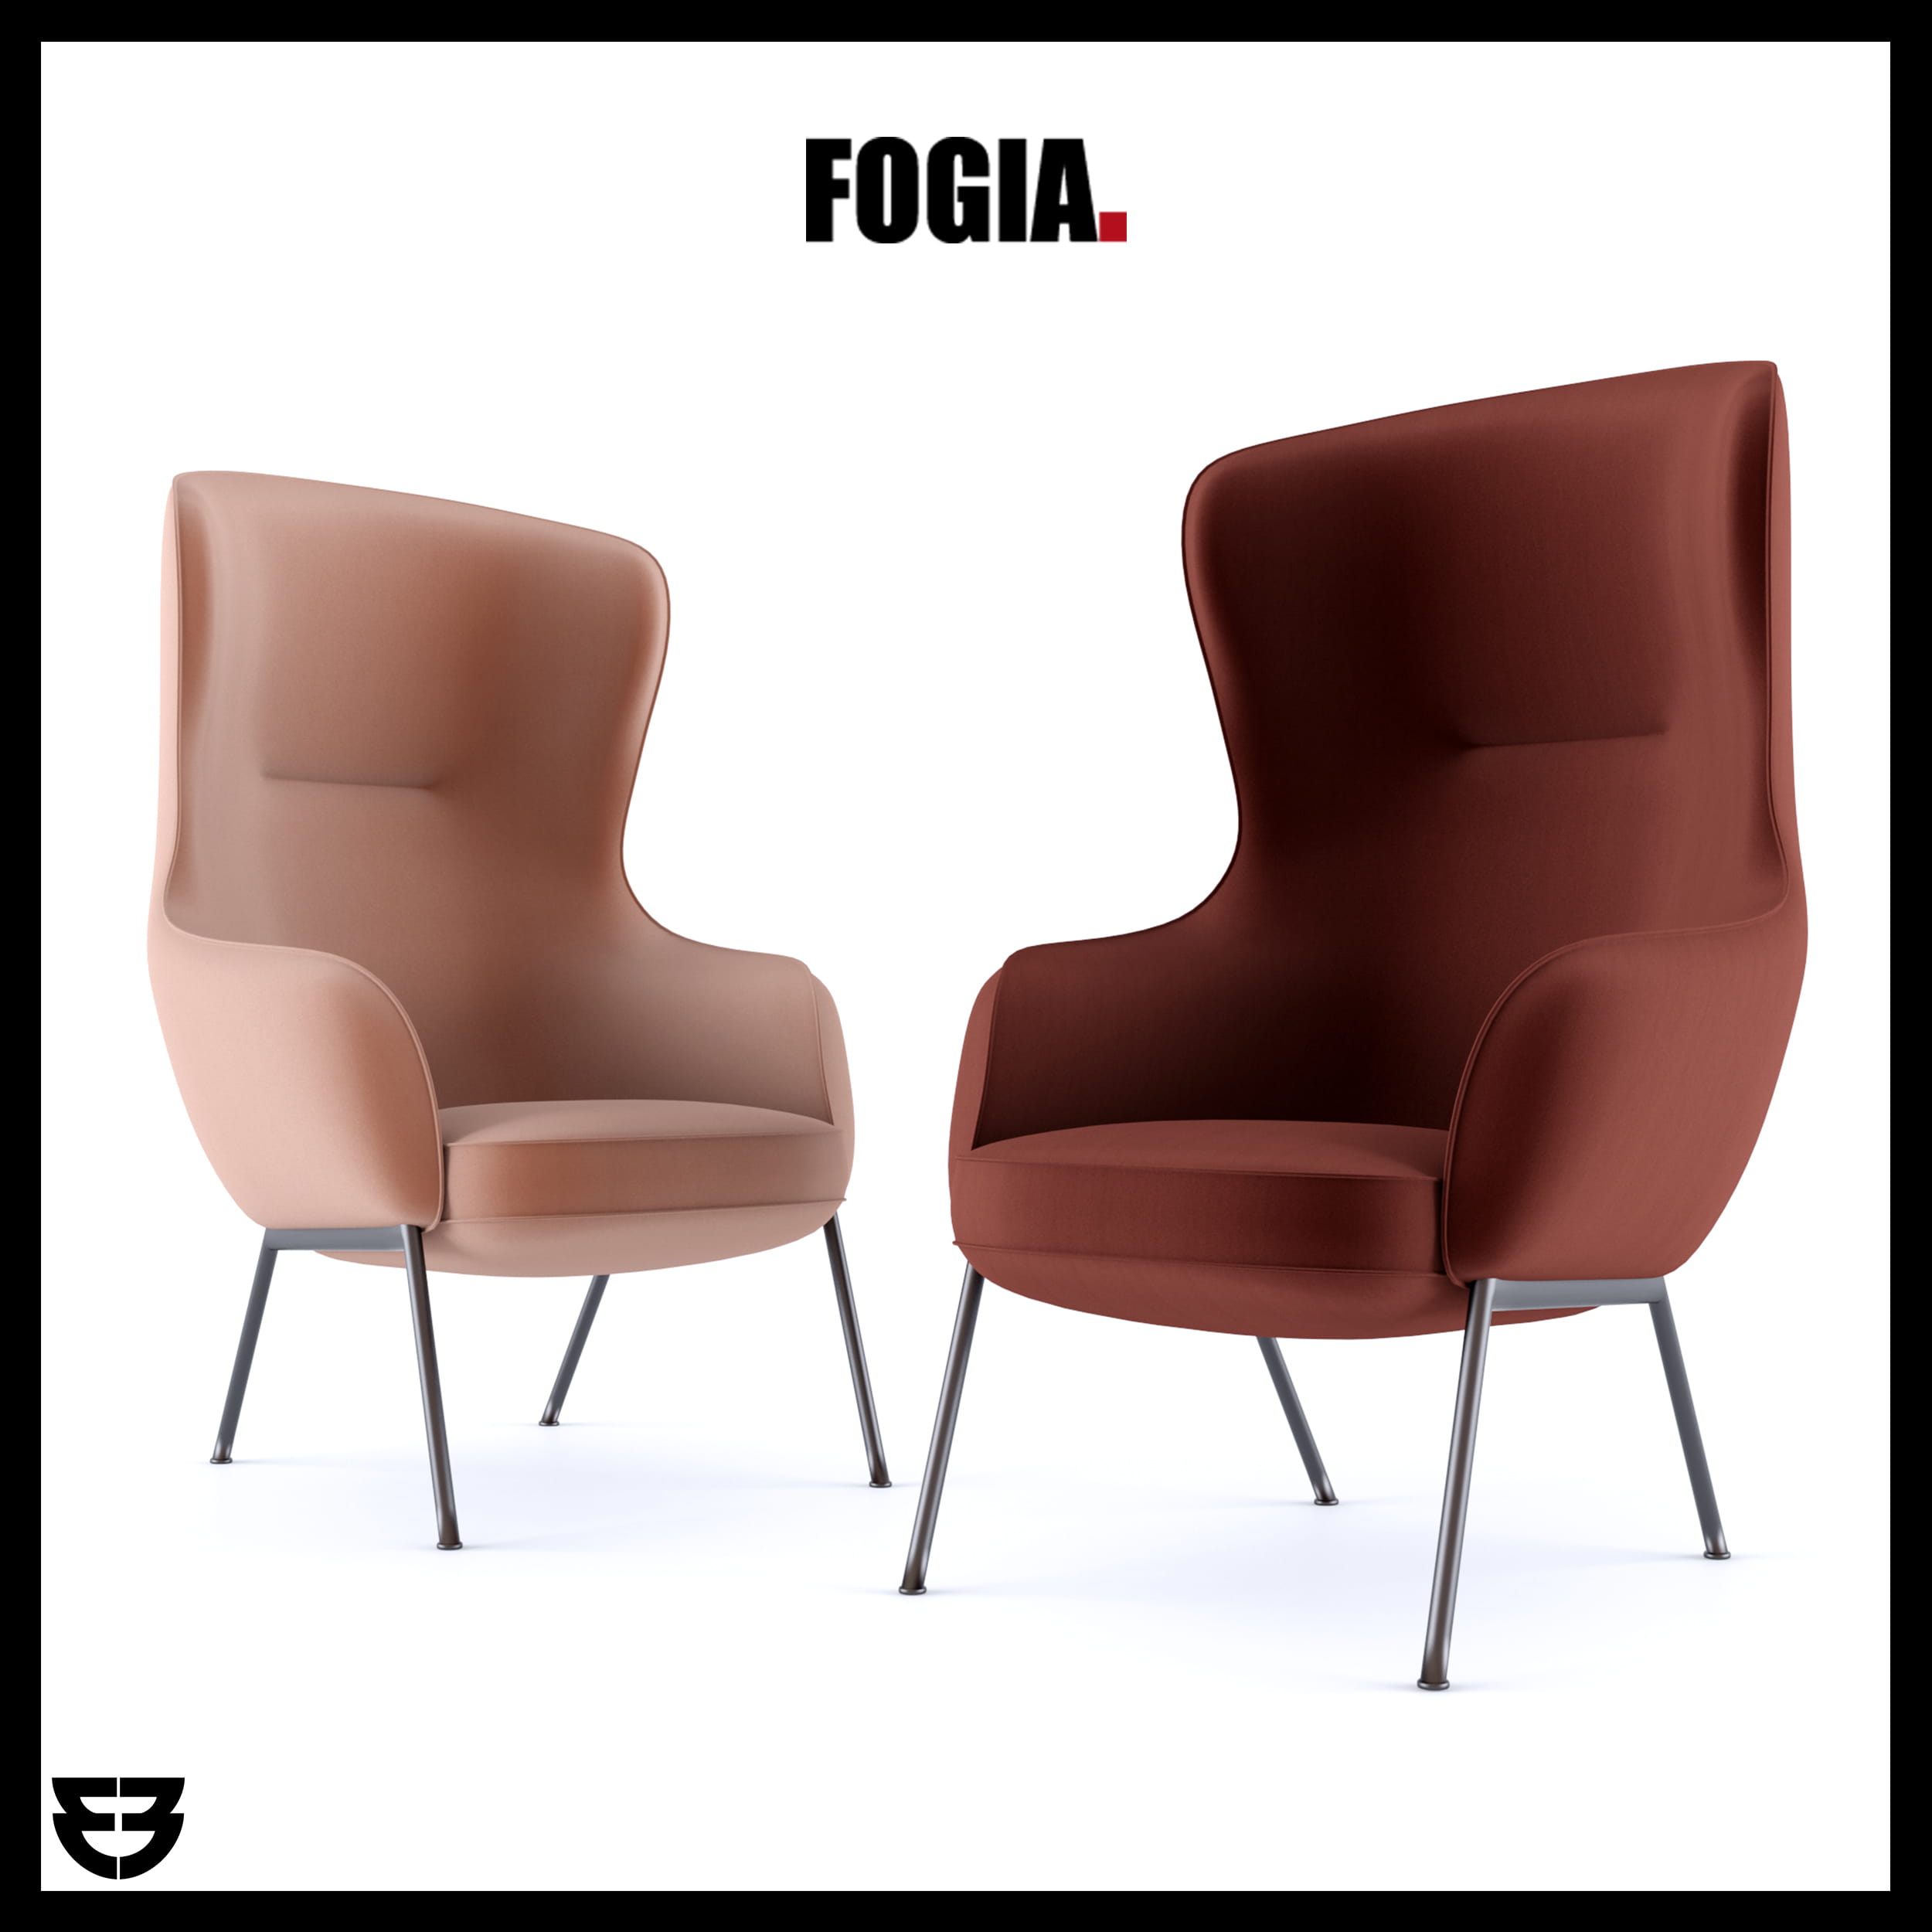 nichetto-studio-fogia-mame-armchair-3d-model